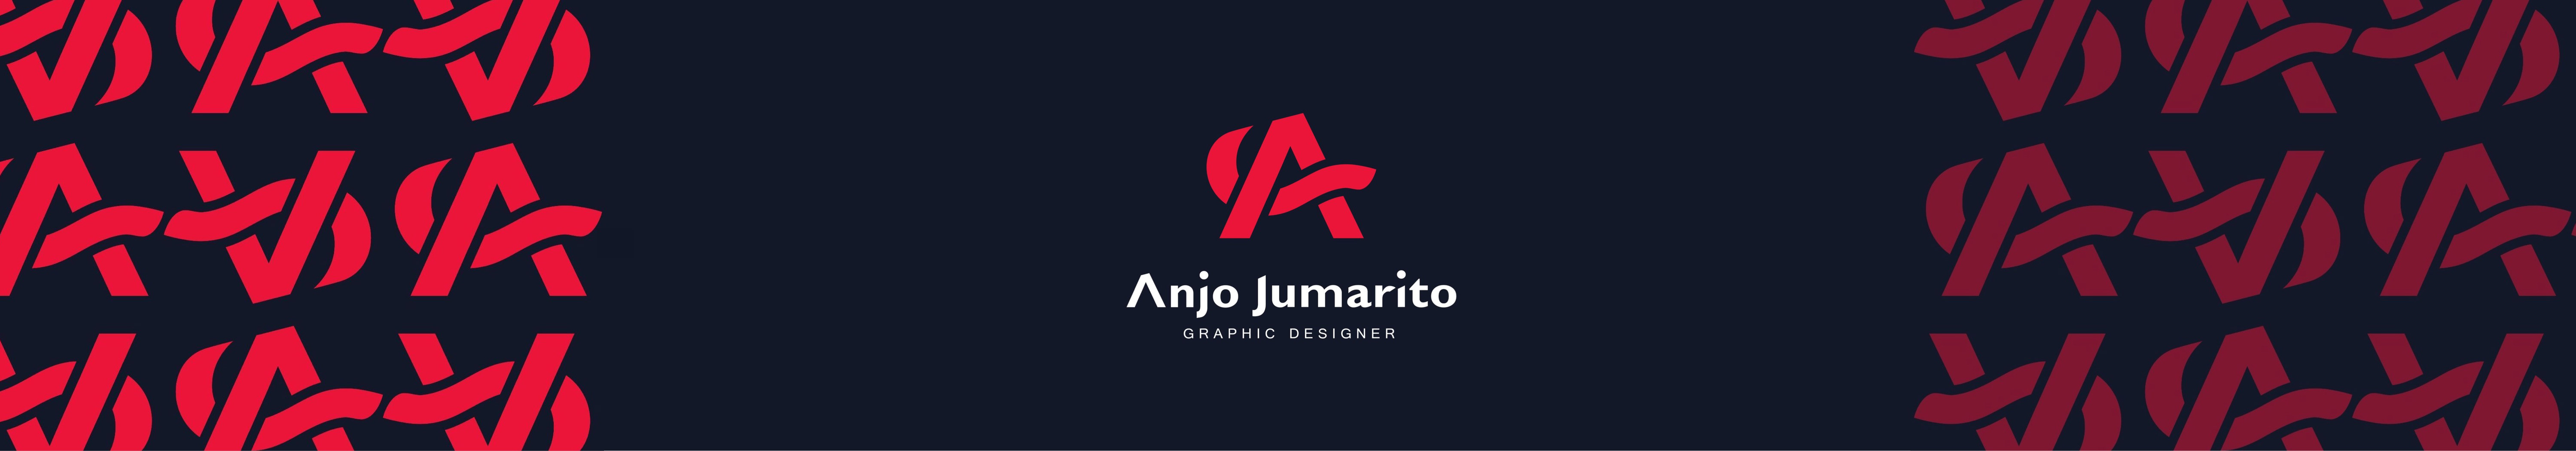 Anjo Jumarito's profile banner